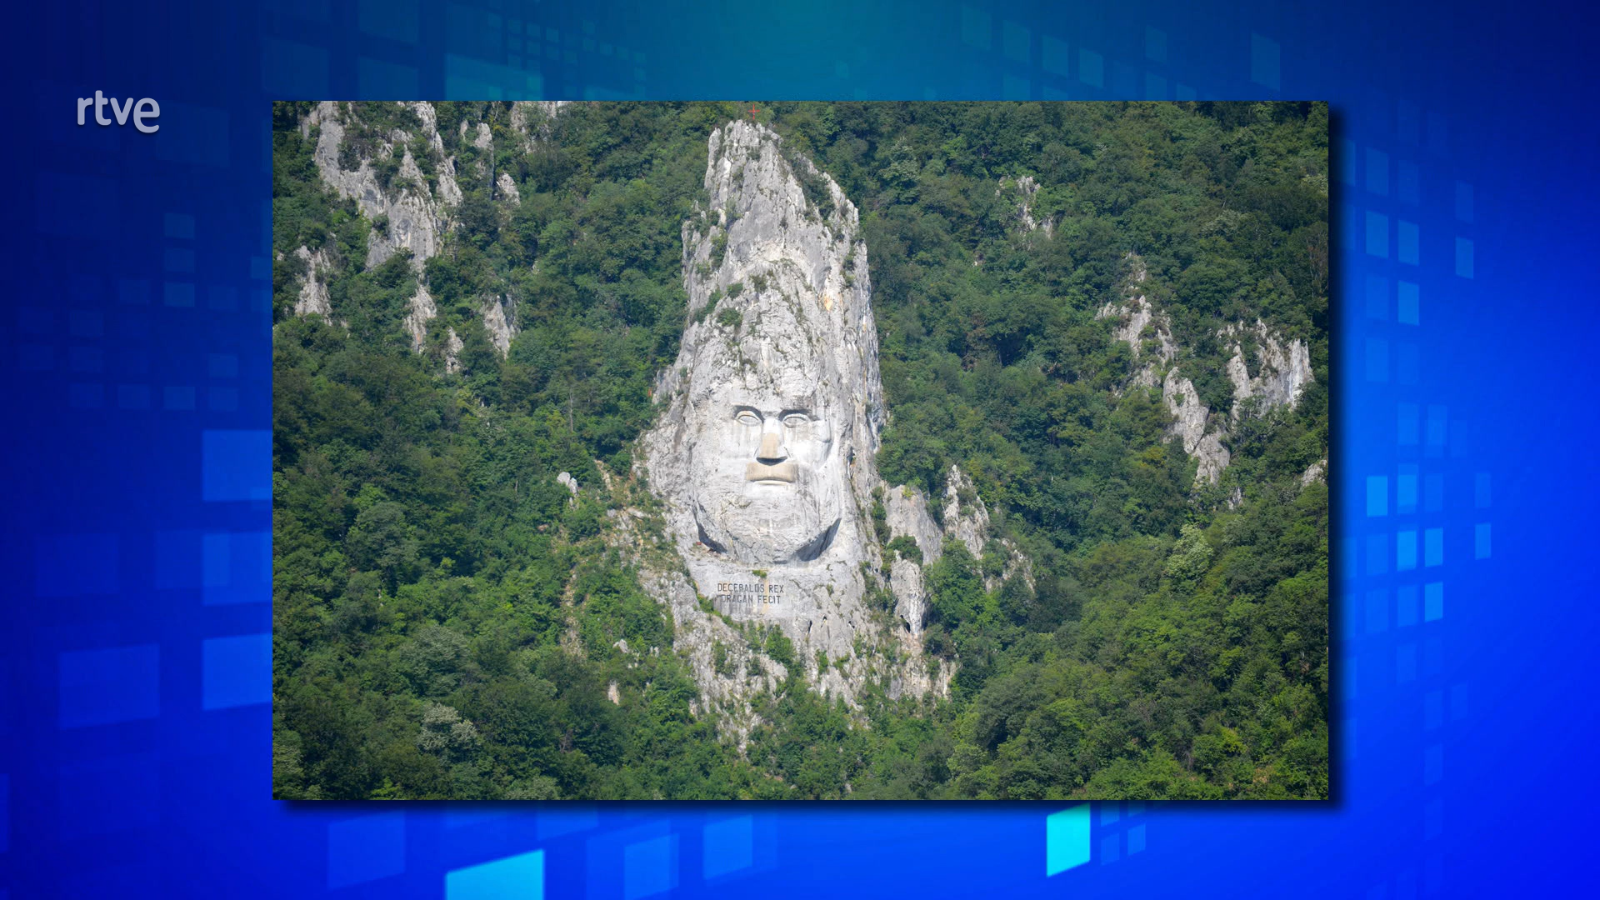 La cara del rey dacio Decébalo, esculpida en roca a orillas del Danubio en Rumanía.